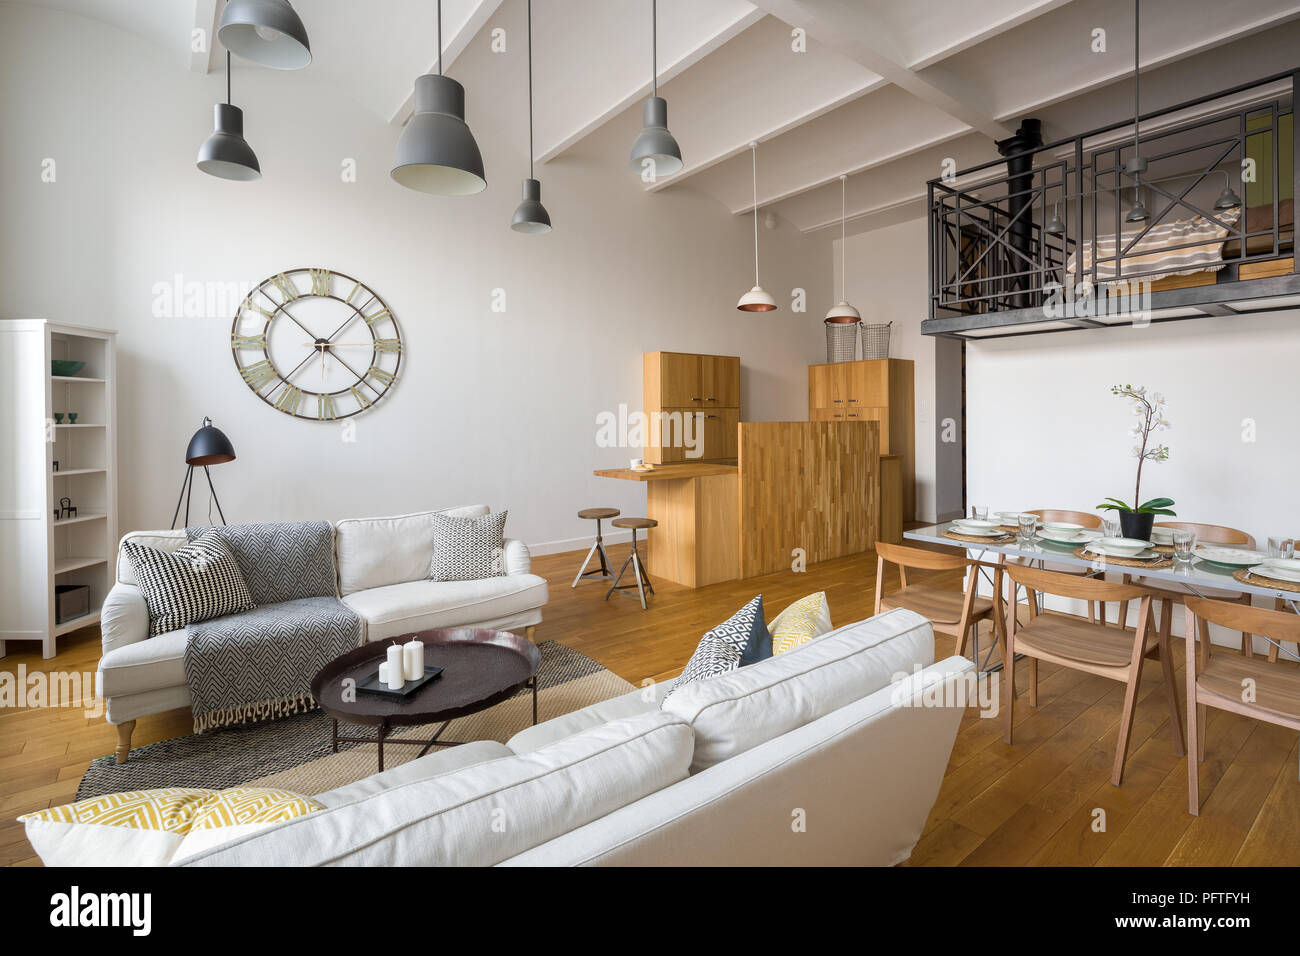 Multifunktionale Home Interior Mit Stilvollen Holzbalken An